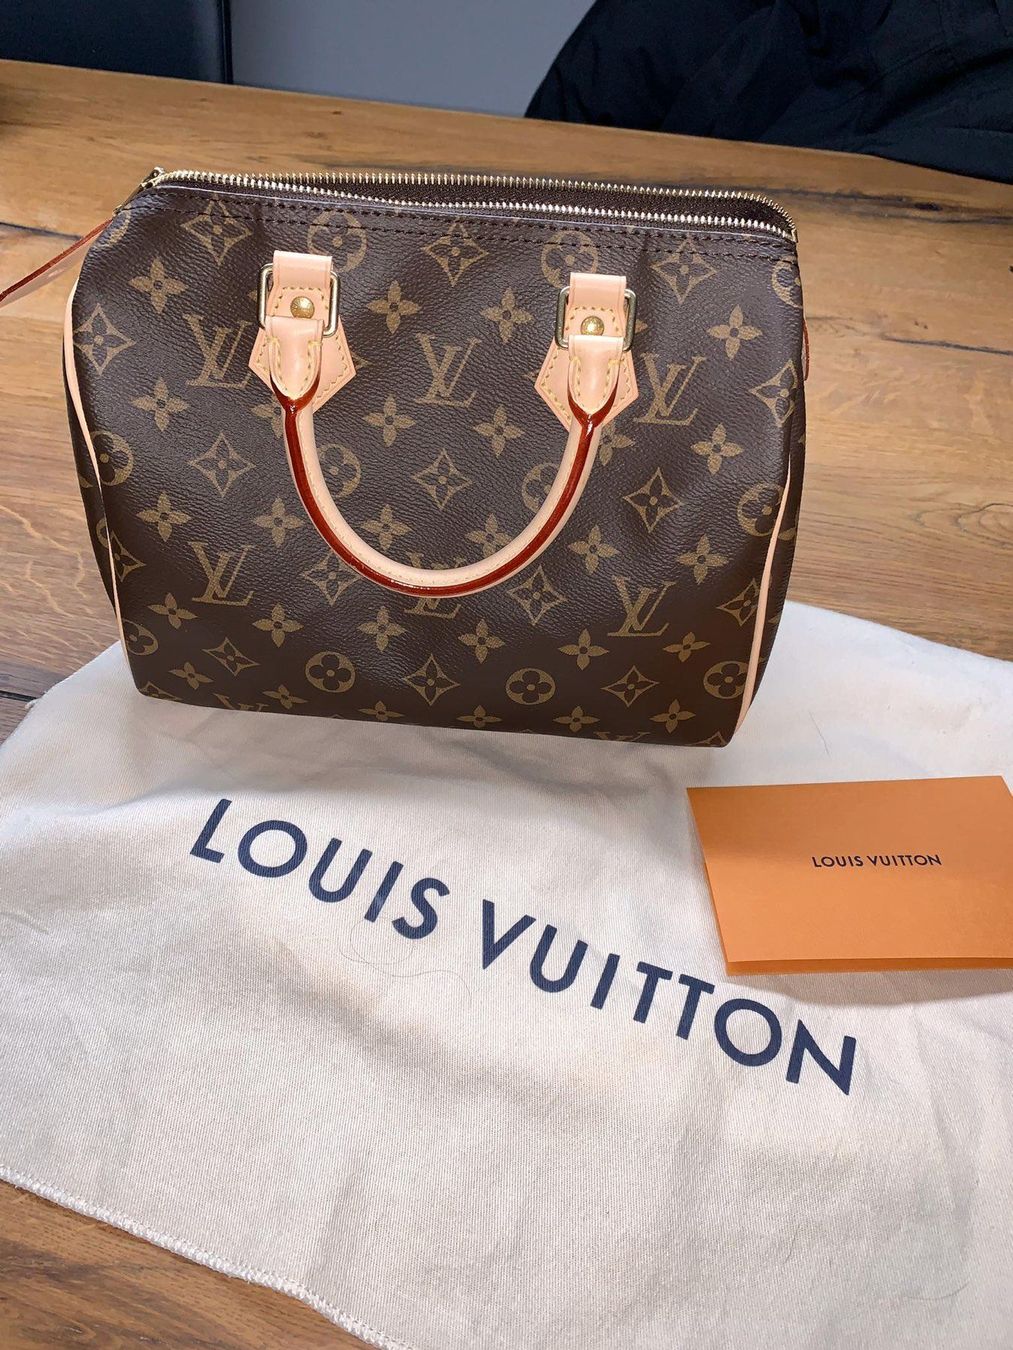 Louis Vuitton Tasche wie neu! kaufen auf Ricardo